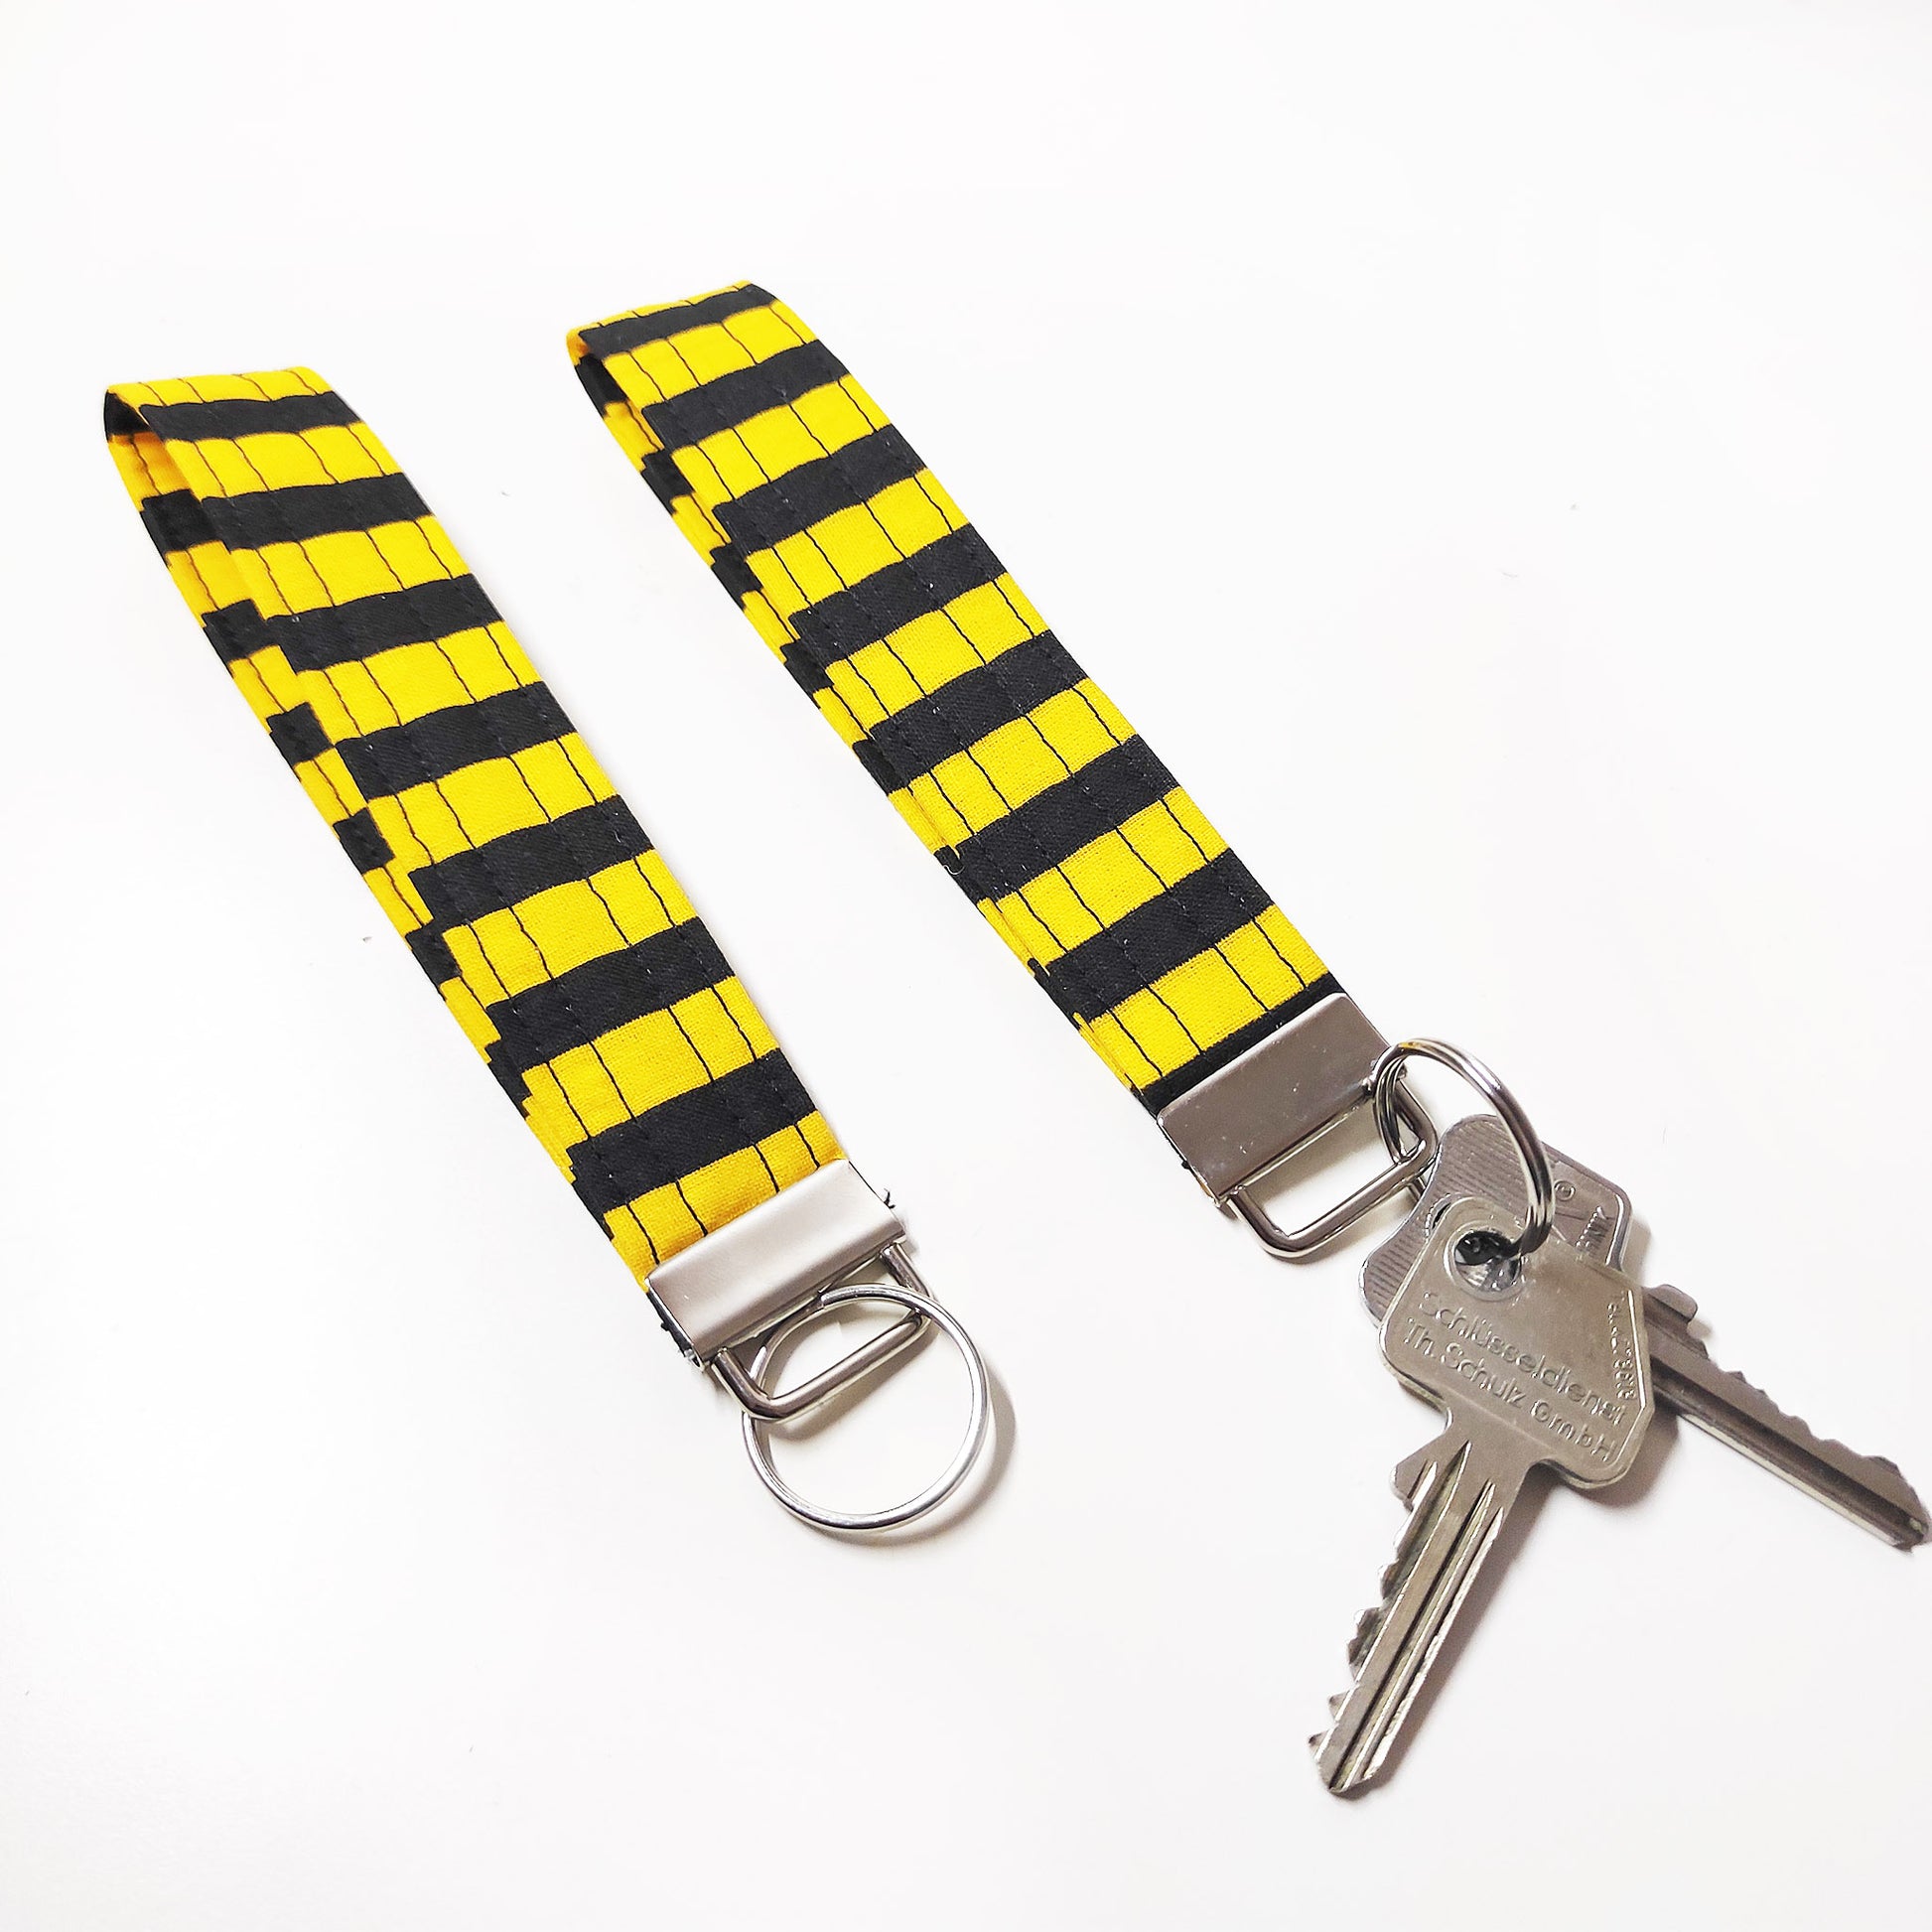 Handgemachter Schlüsselanhänger in gestreiftem gelb und schwarz. Dieser praktische Anhänger kann bequem um das Handgelenk getragen werden, sodass er jederzeit griffbereit ist.